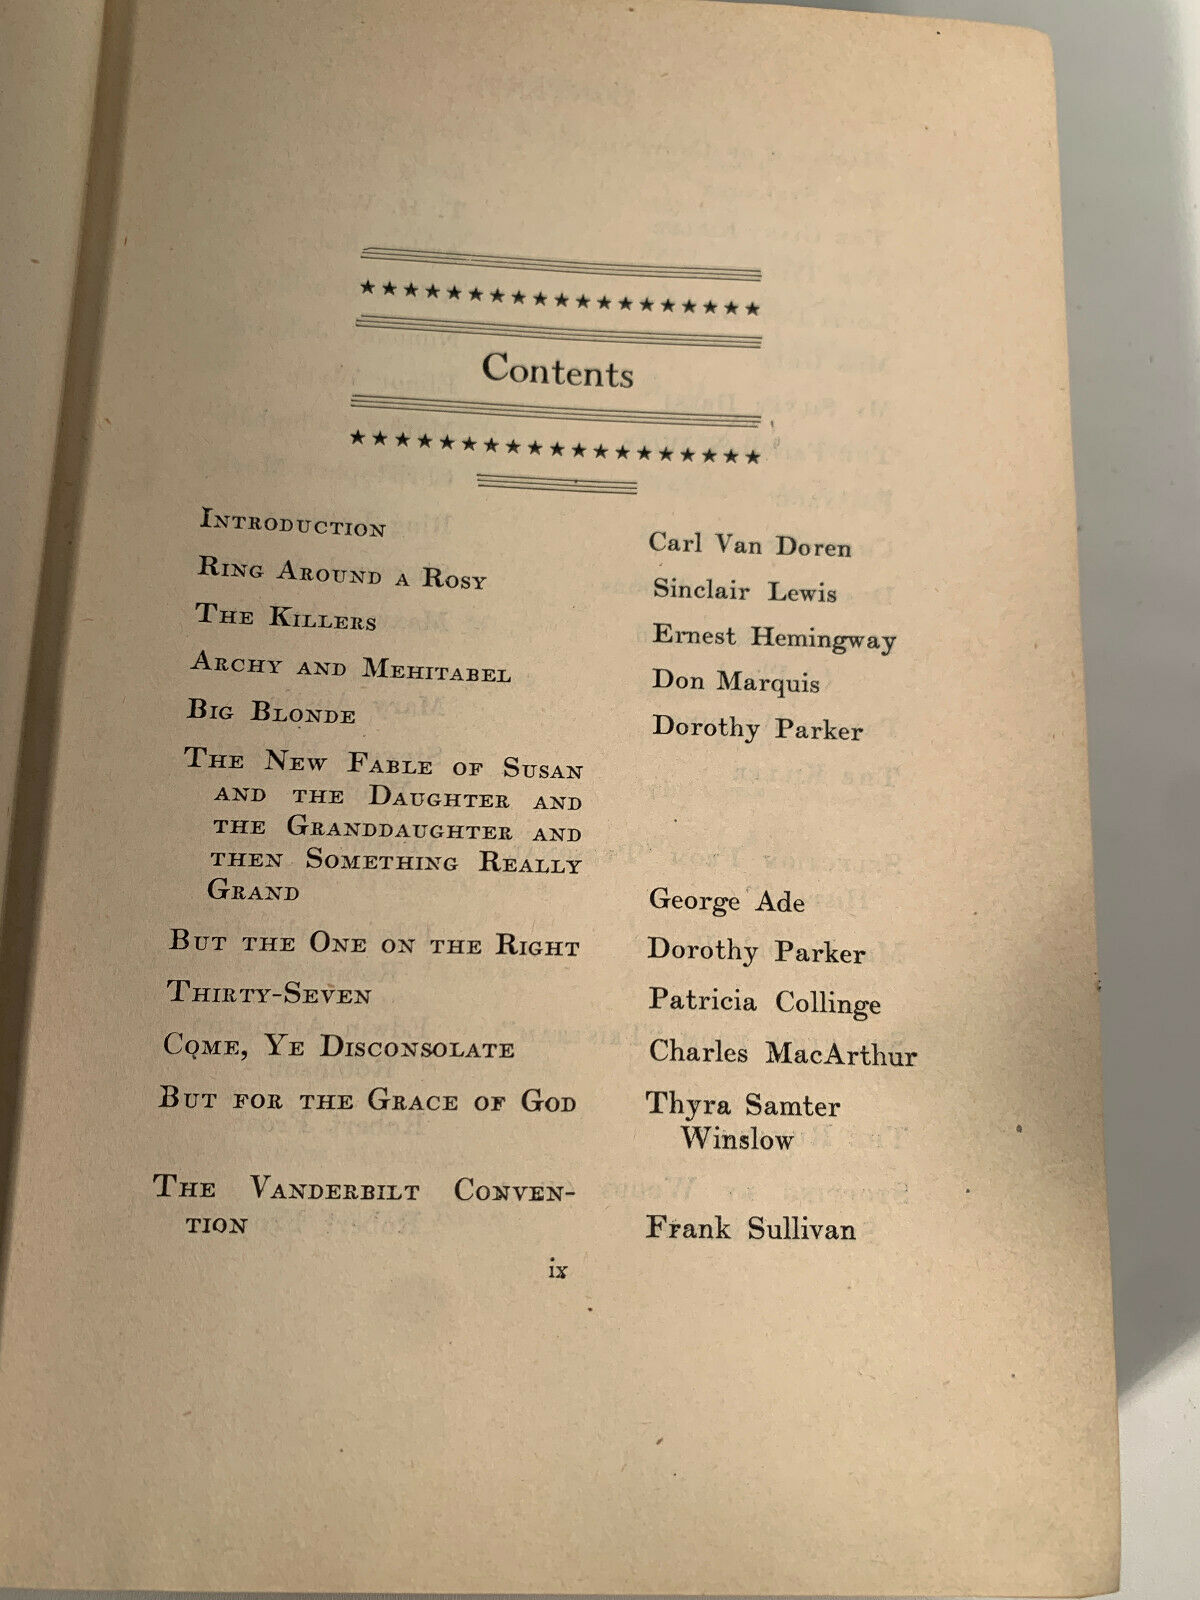 The American Omnibus intro by Carl Von Doren 1933